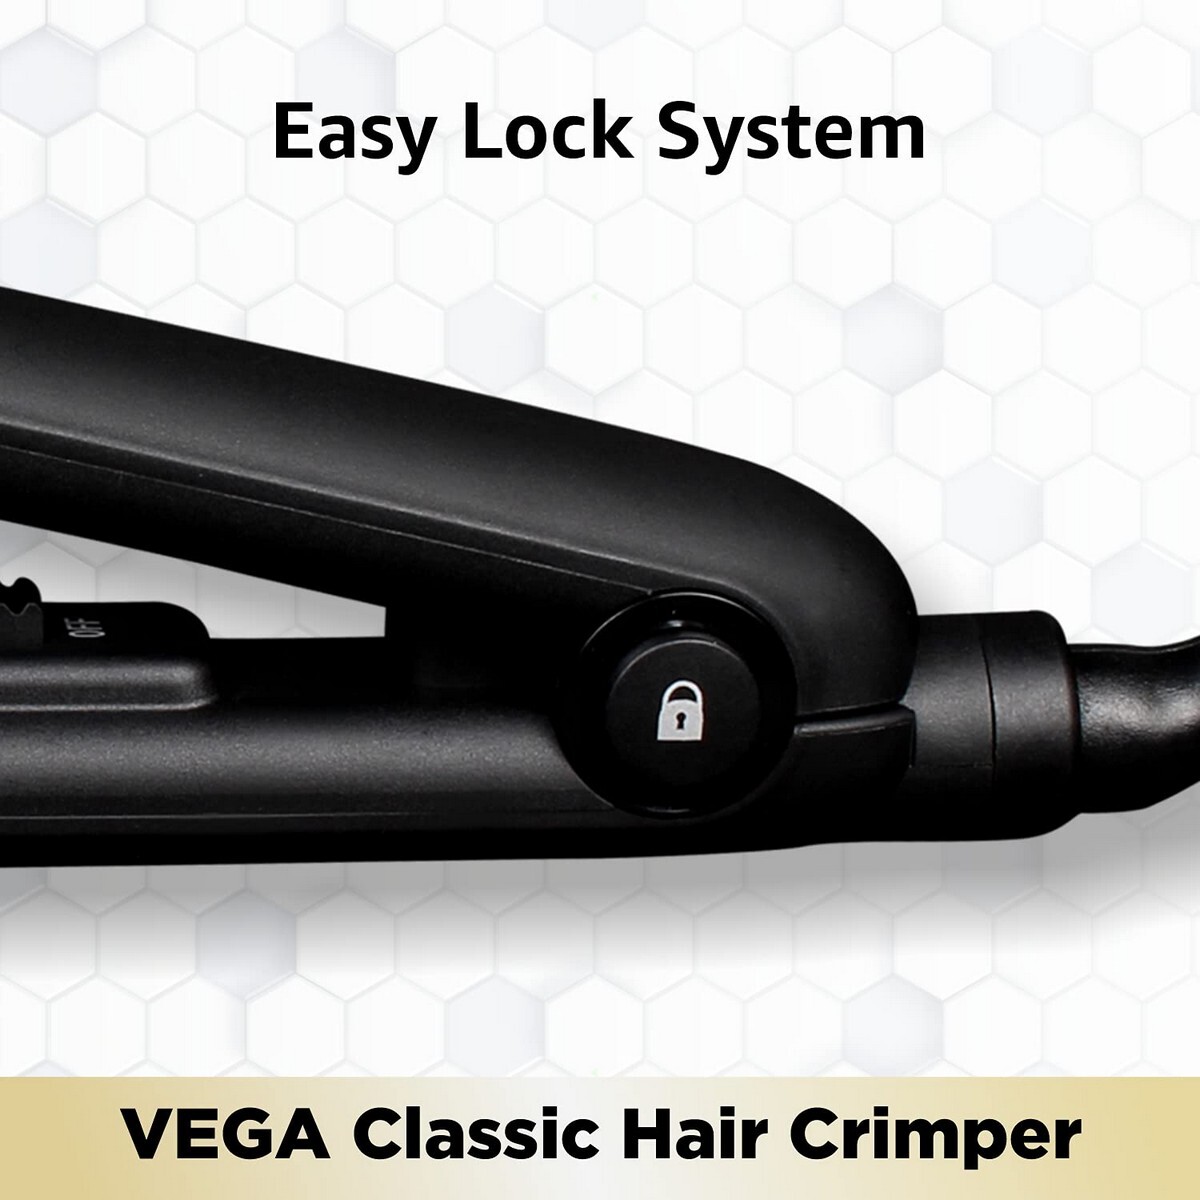 VEGA Classic Hair Crimper With Quick Heat Up & Ceramic Coated Plates, VHCR-01